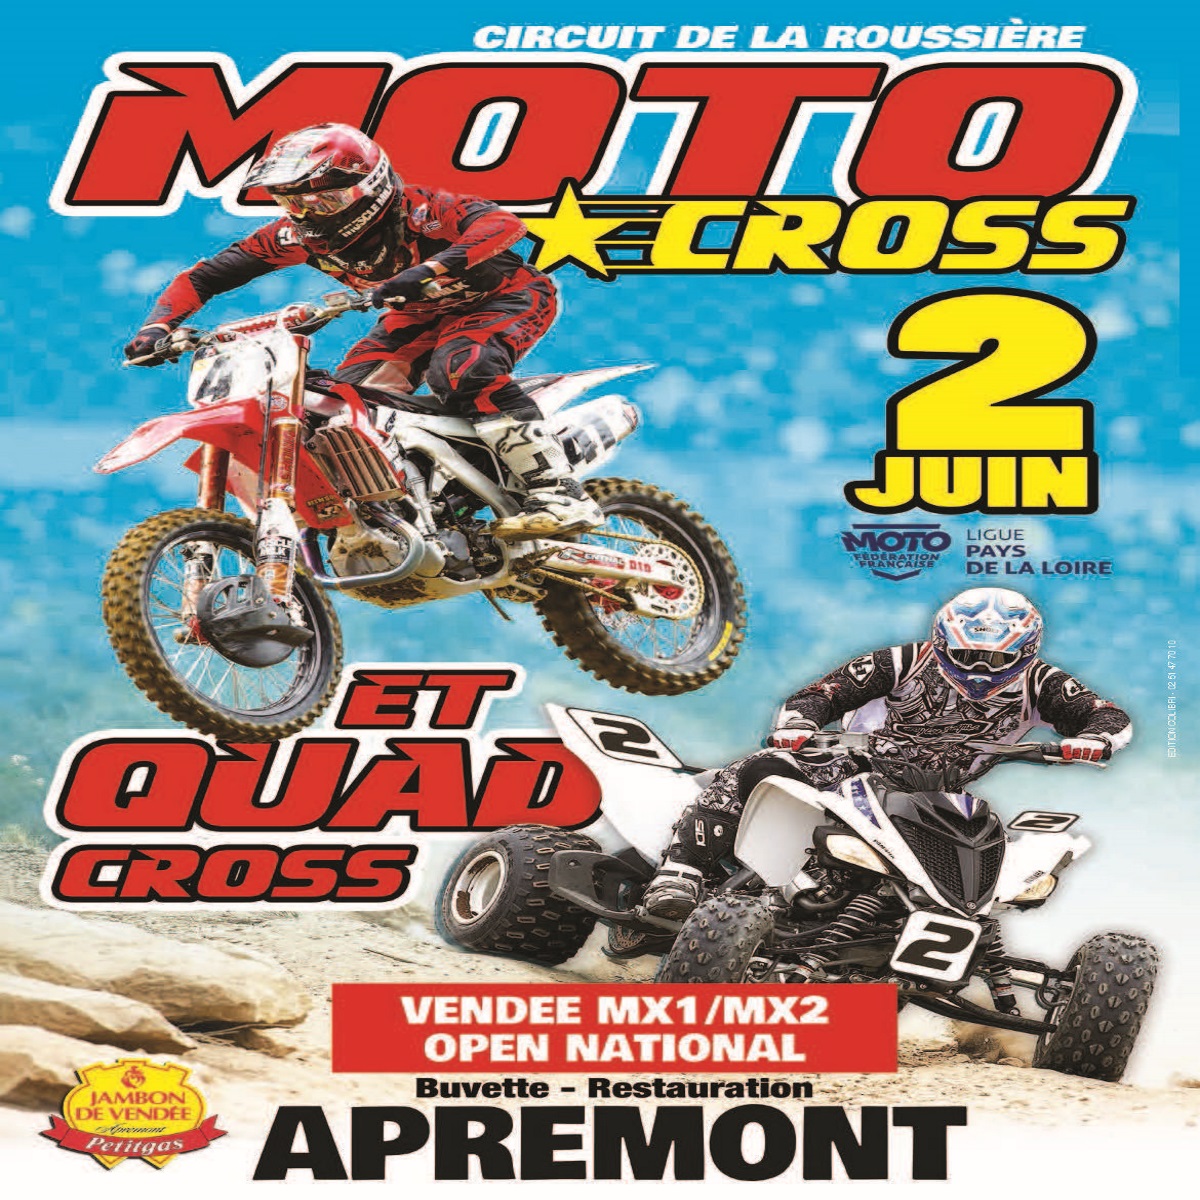 Info Motocross - Apremont 2 juin